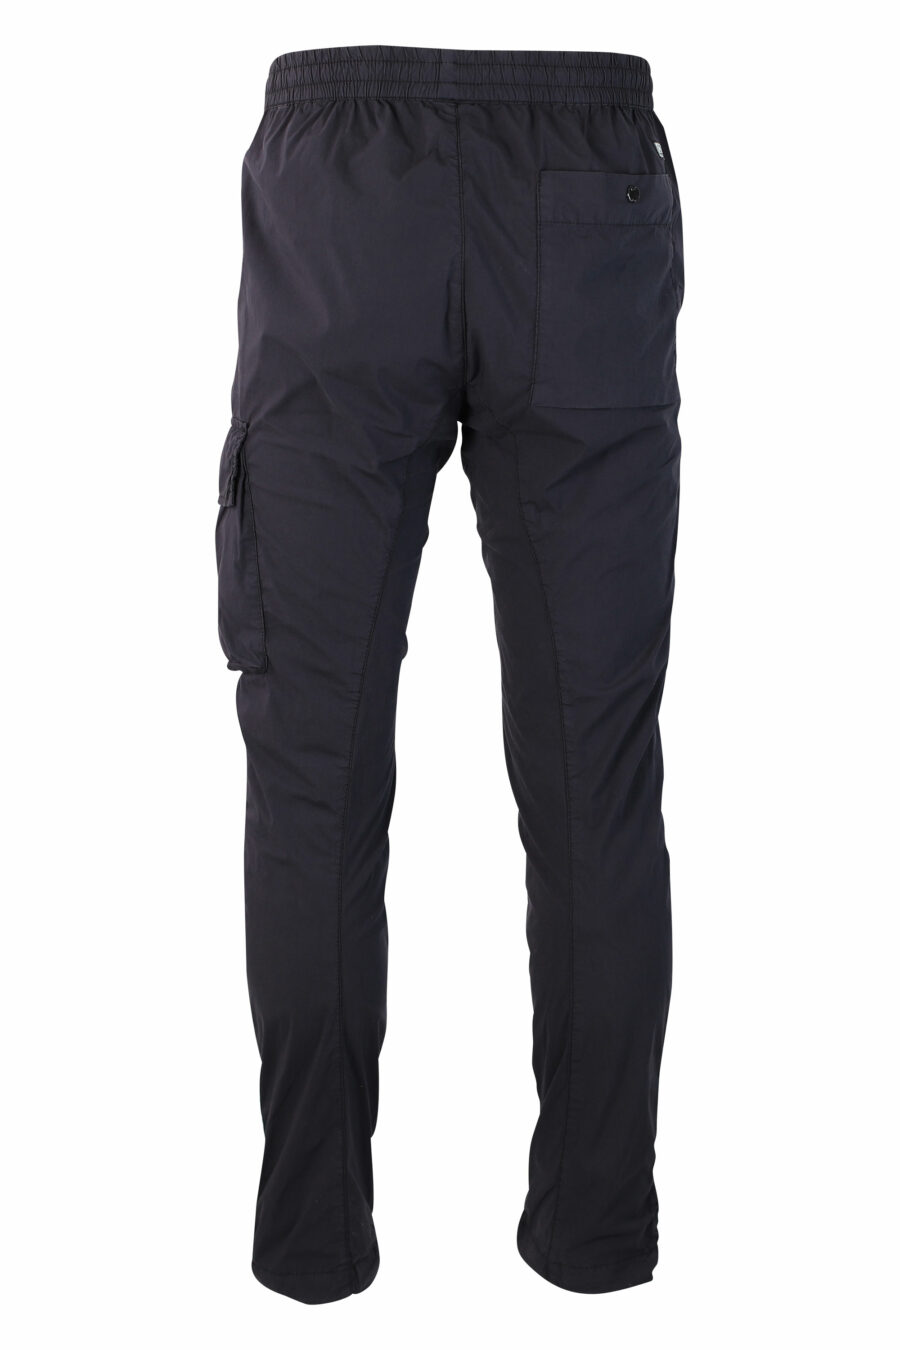 Pantalón azul oscuro con minilogo circular lateral - IMG 9992